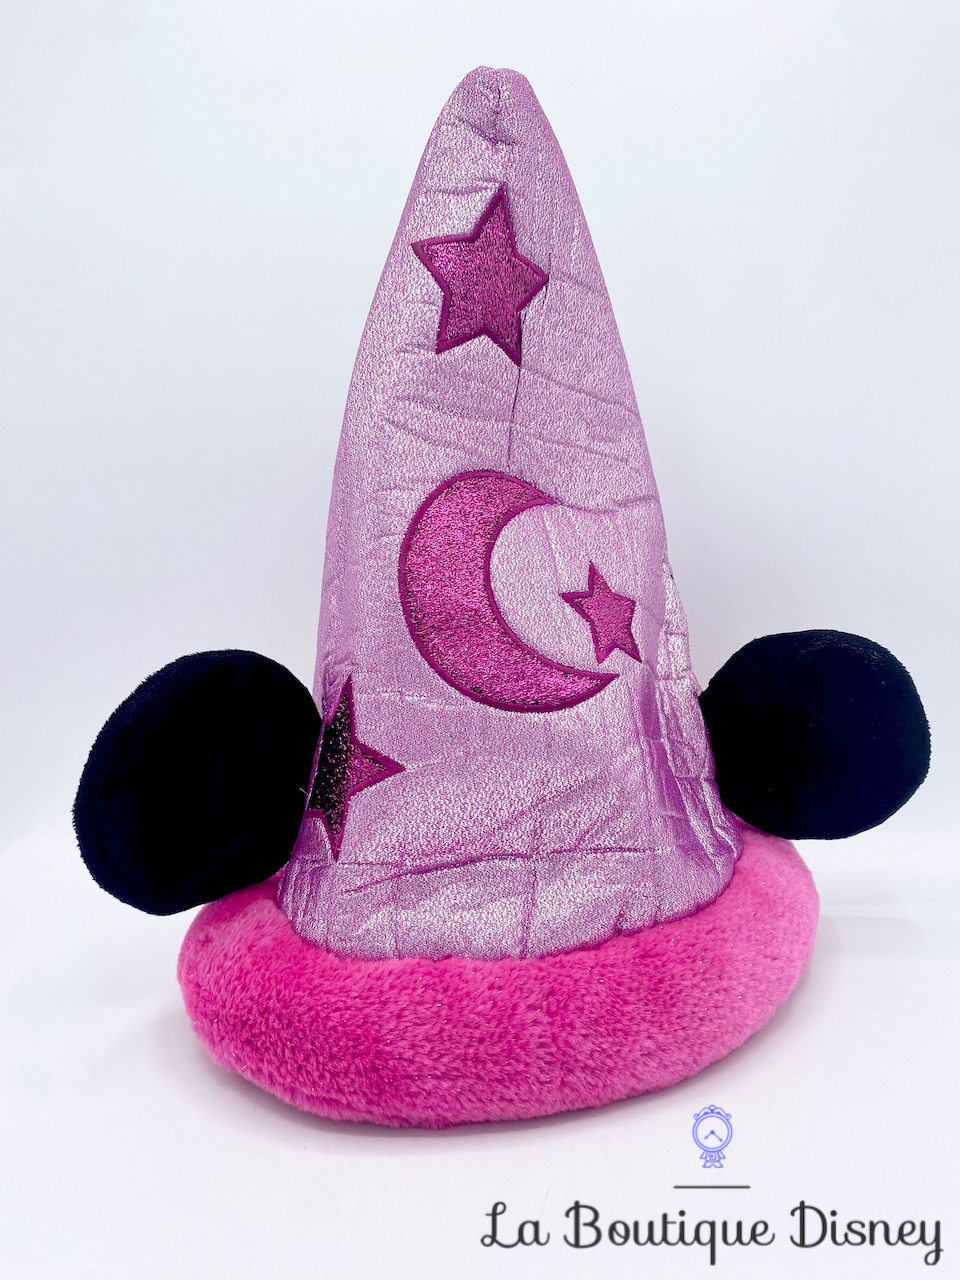 Chapeau Minnie Mouse Fantasia Disneyland Paris Disney rose oreilles lune étoiles